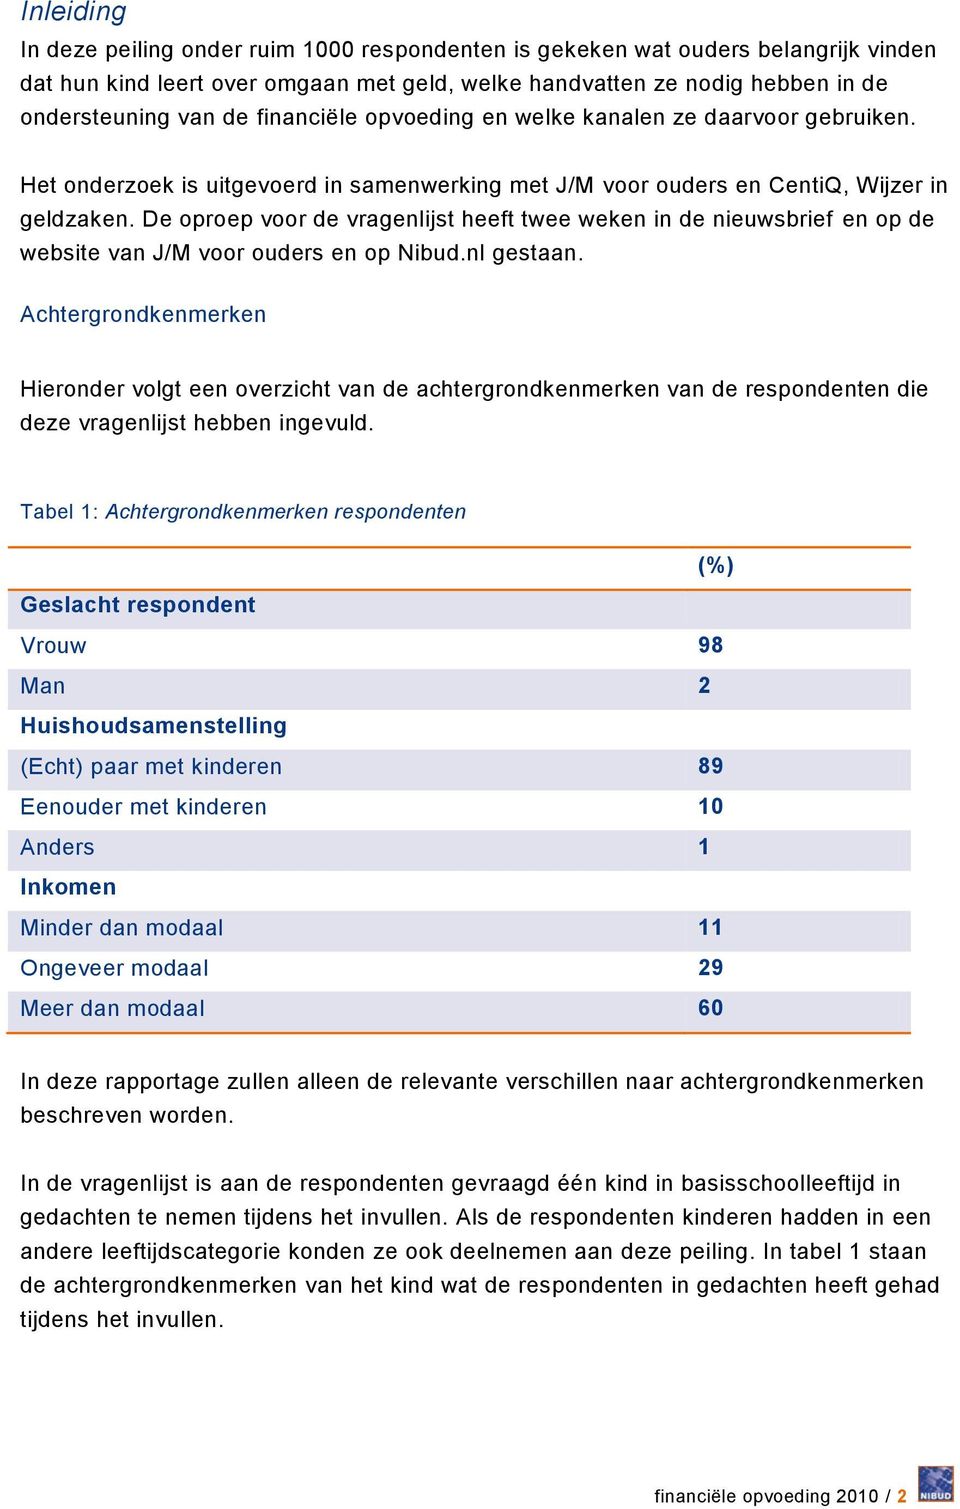 De oproep voor de vragenlijst heeft twee weken in de nieuwsbrief en op de website van J/M voor ouders en op Nibud.nl gestaan.